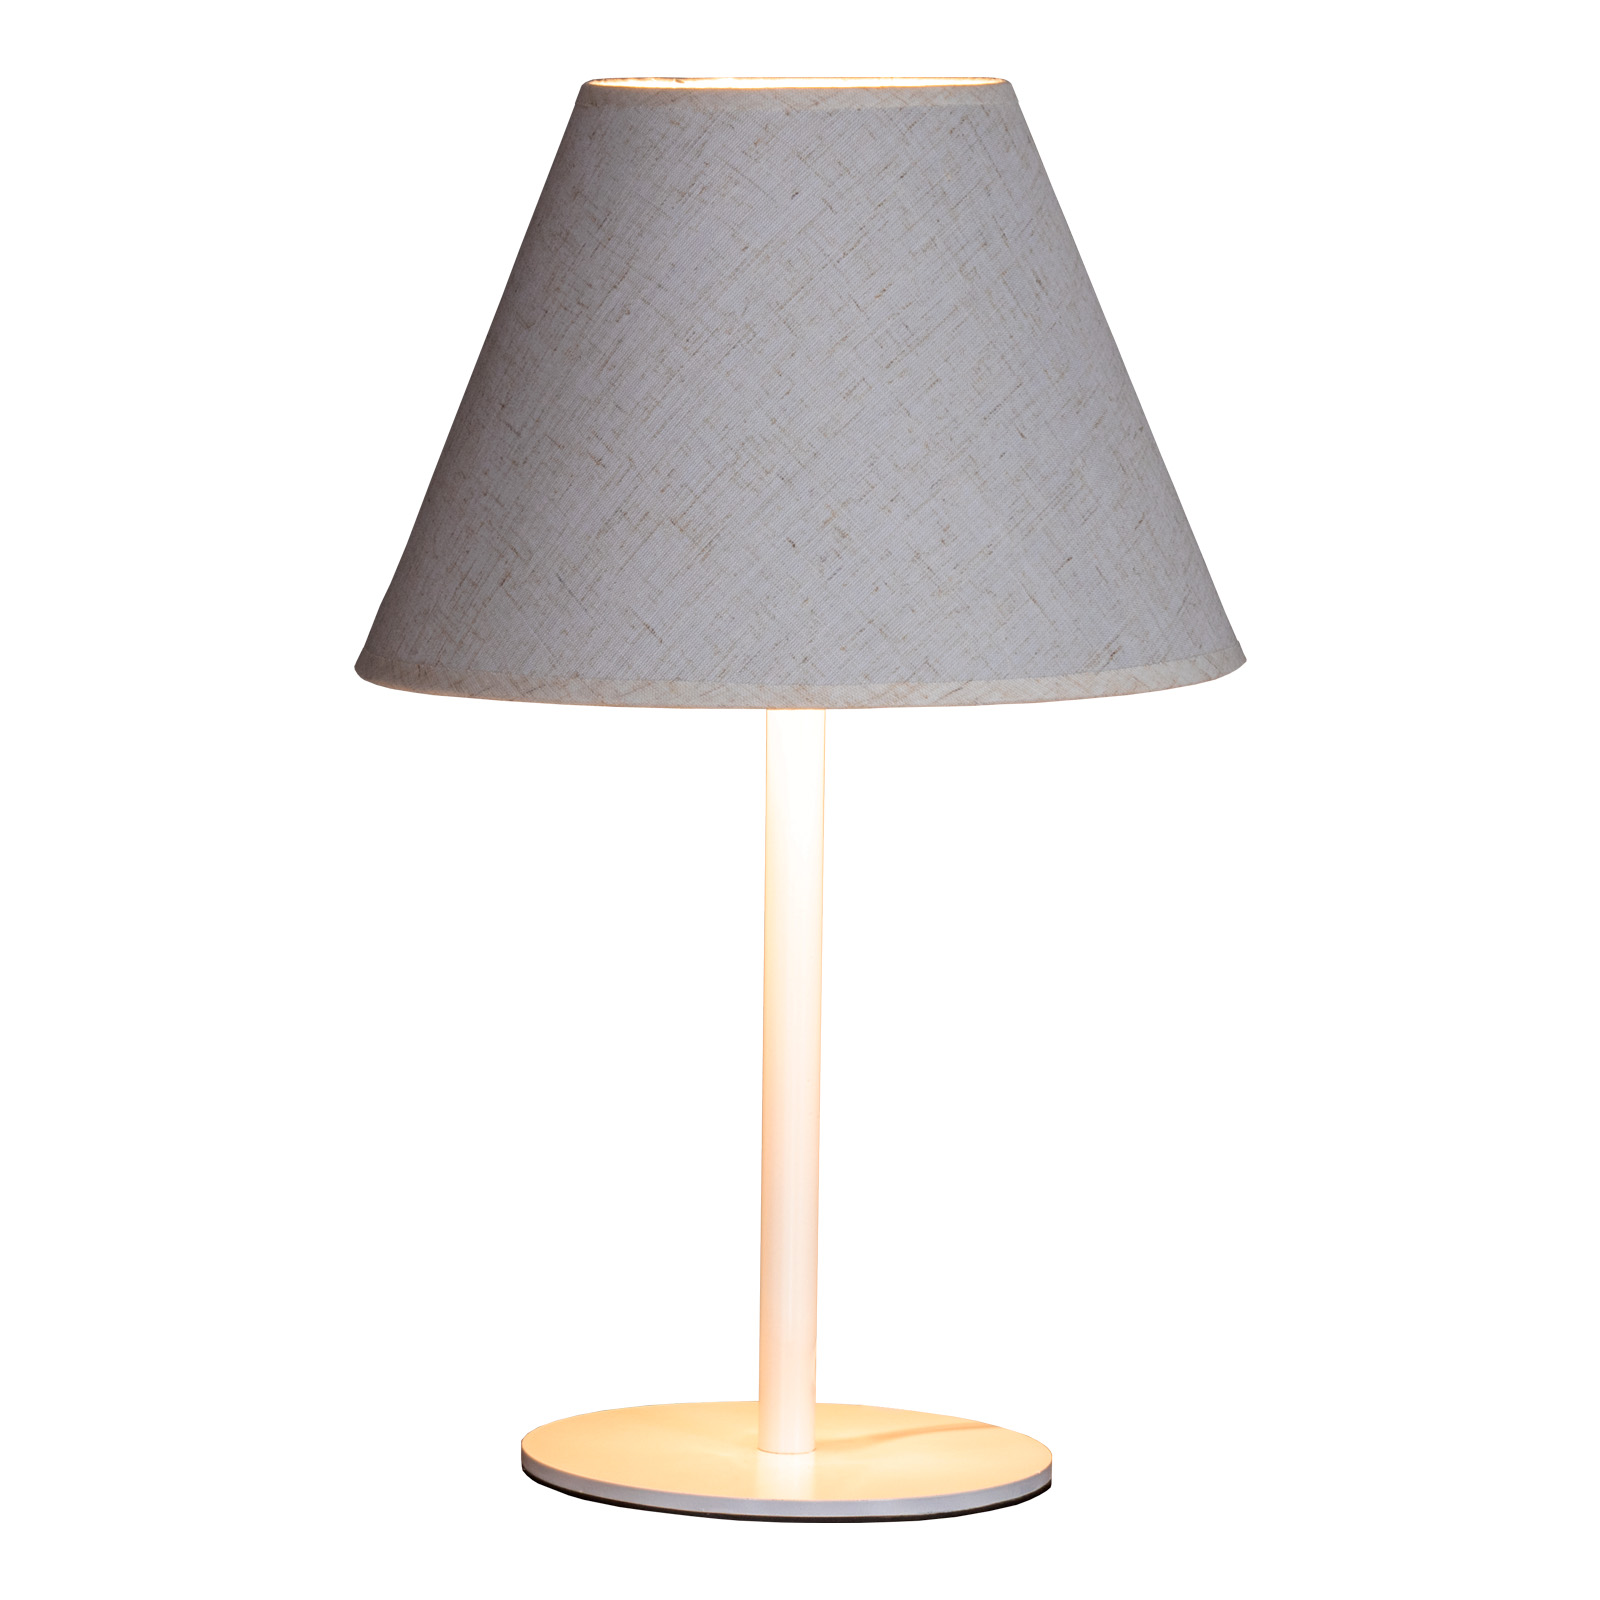 Настольная лампа Maesta Белый абажур натурал MA-40130-W+N E27 15 Вт